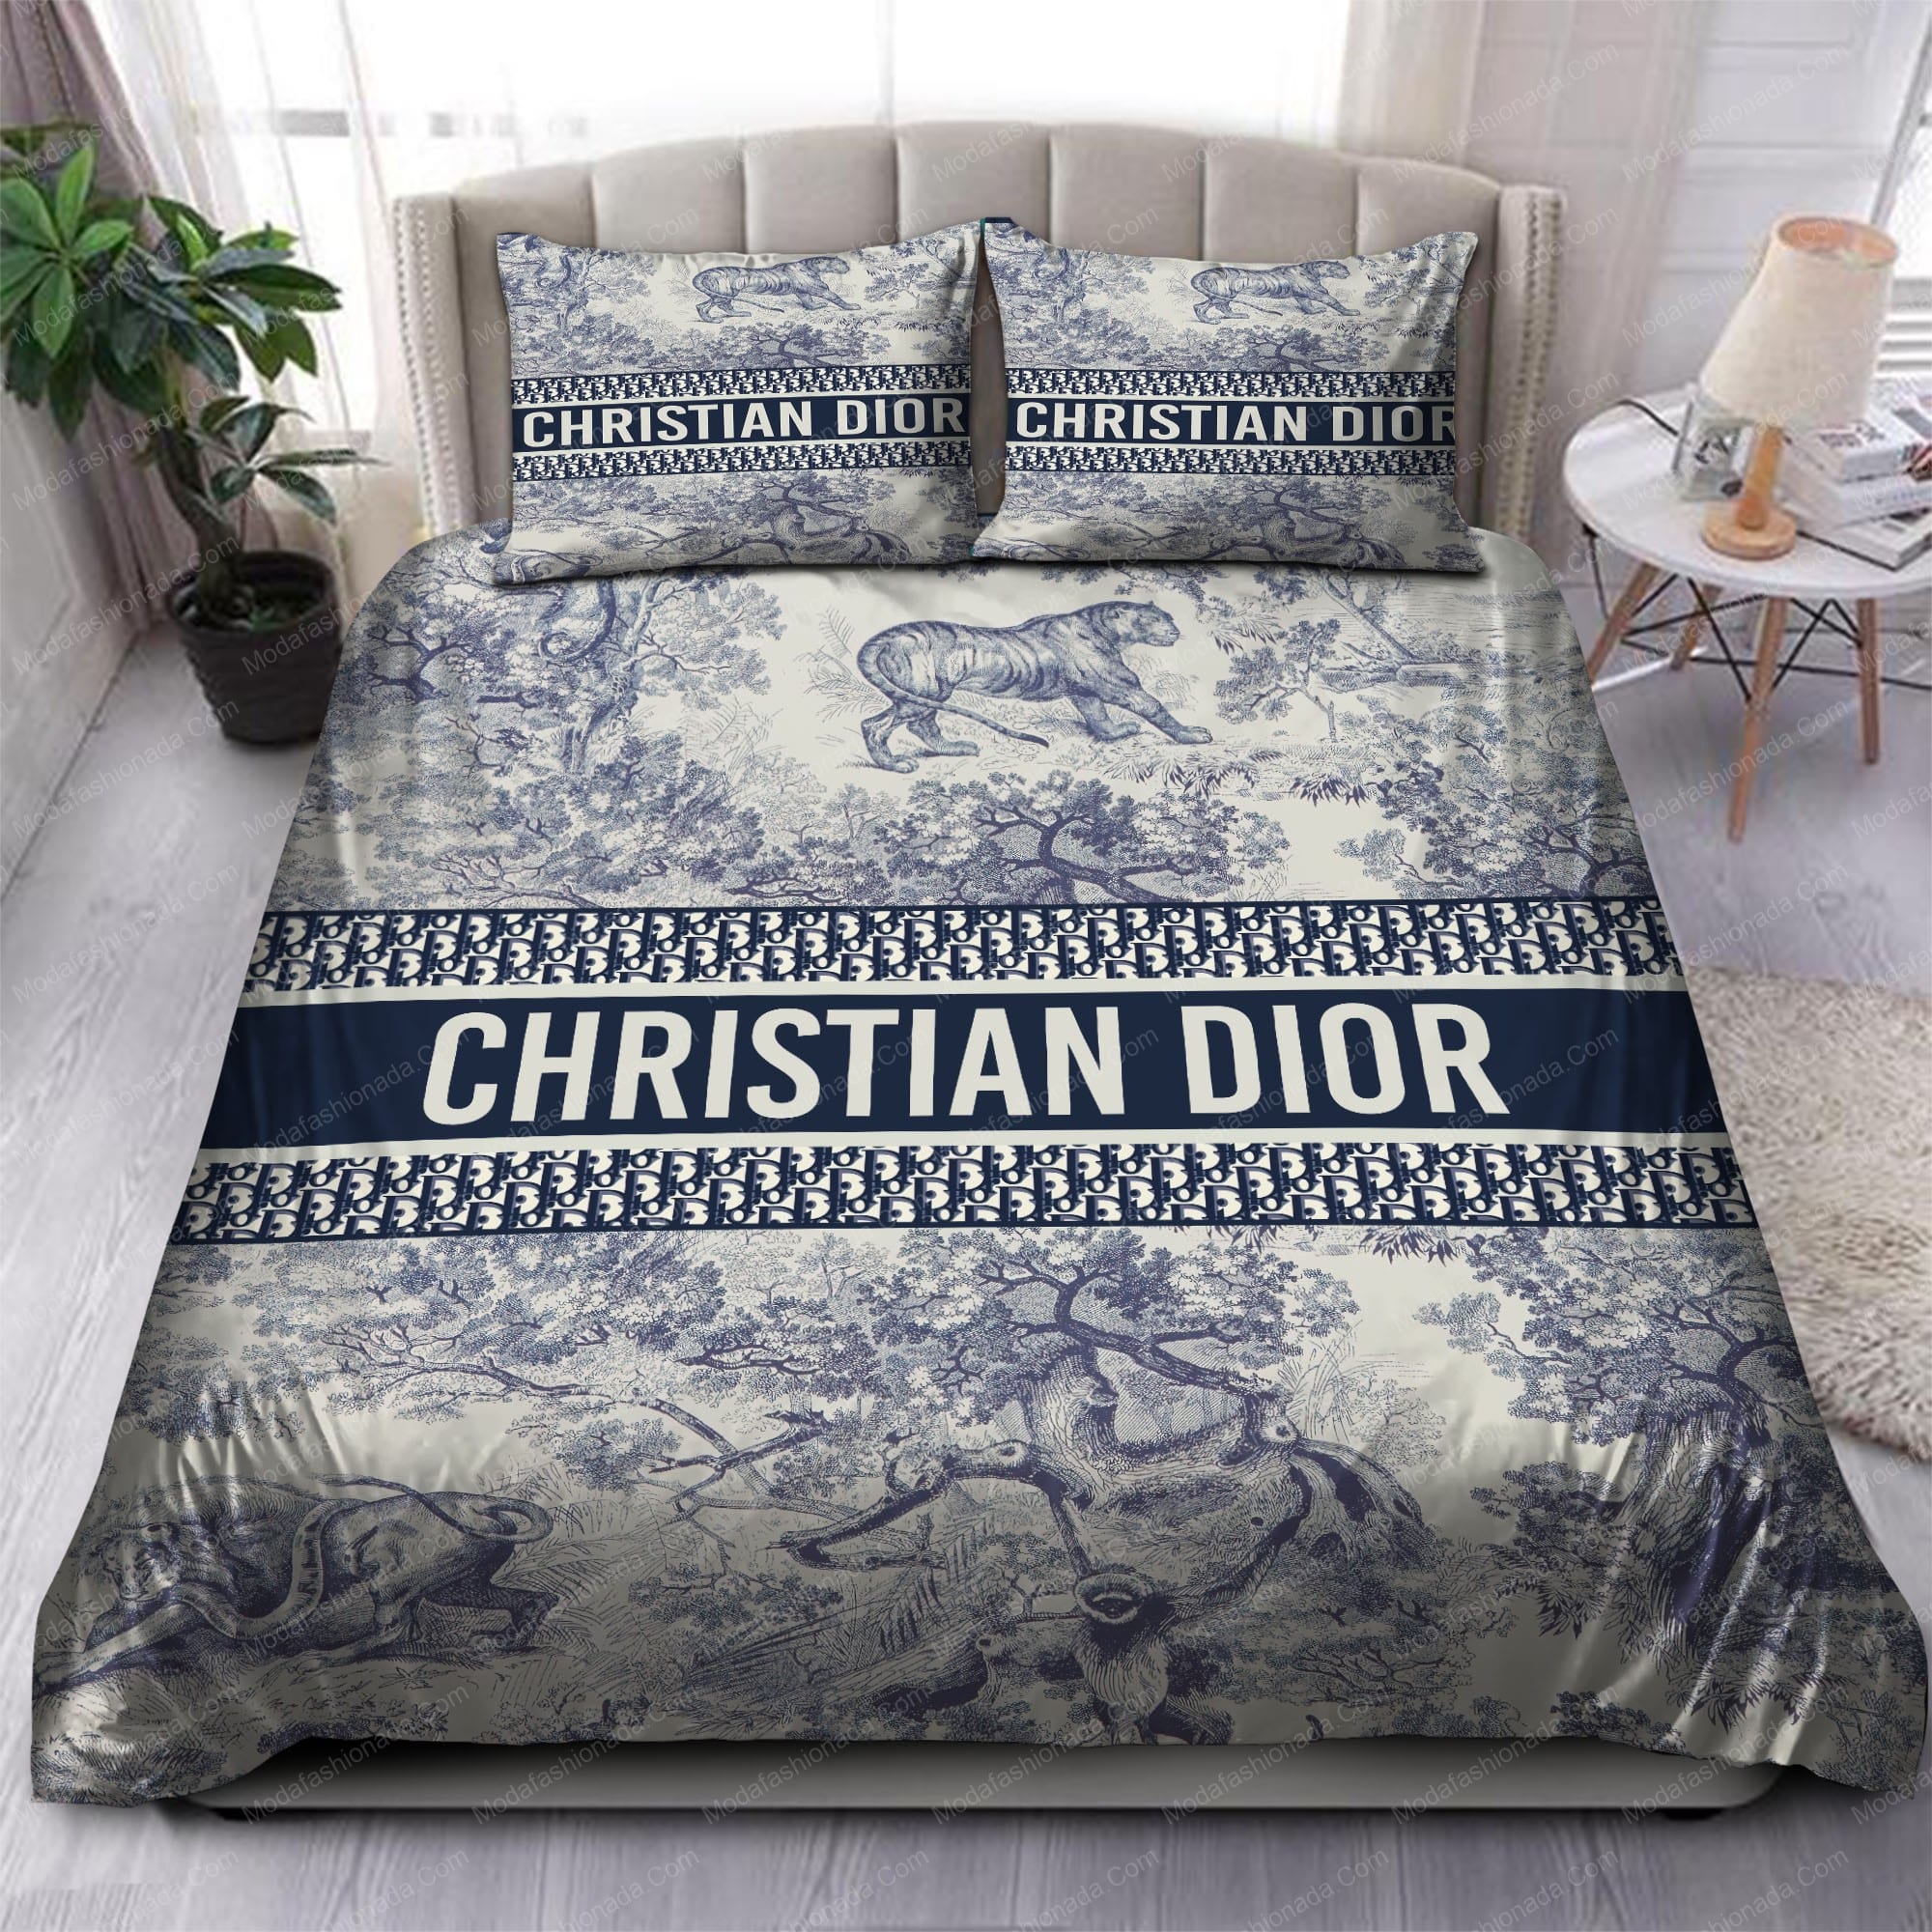 Buy Christian Dior Tiger Bedding Sets Bed Sets, Bedroom Sets, Comforter ...